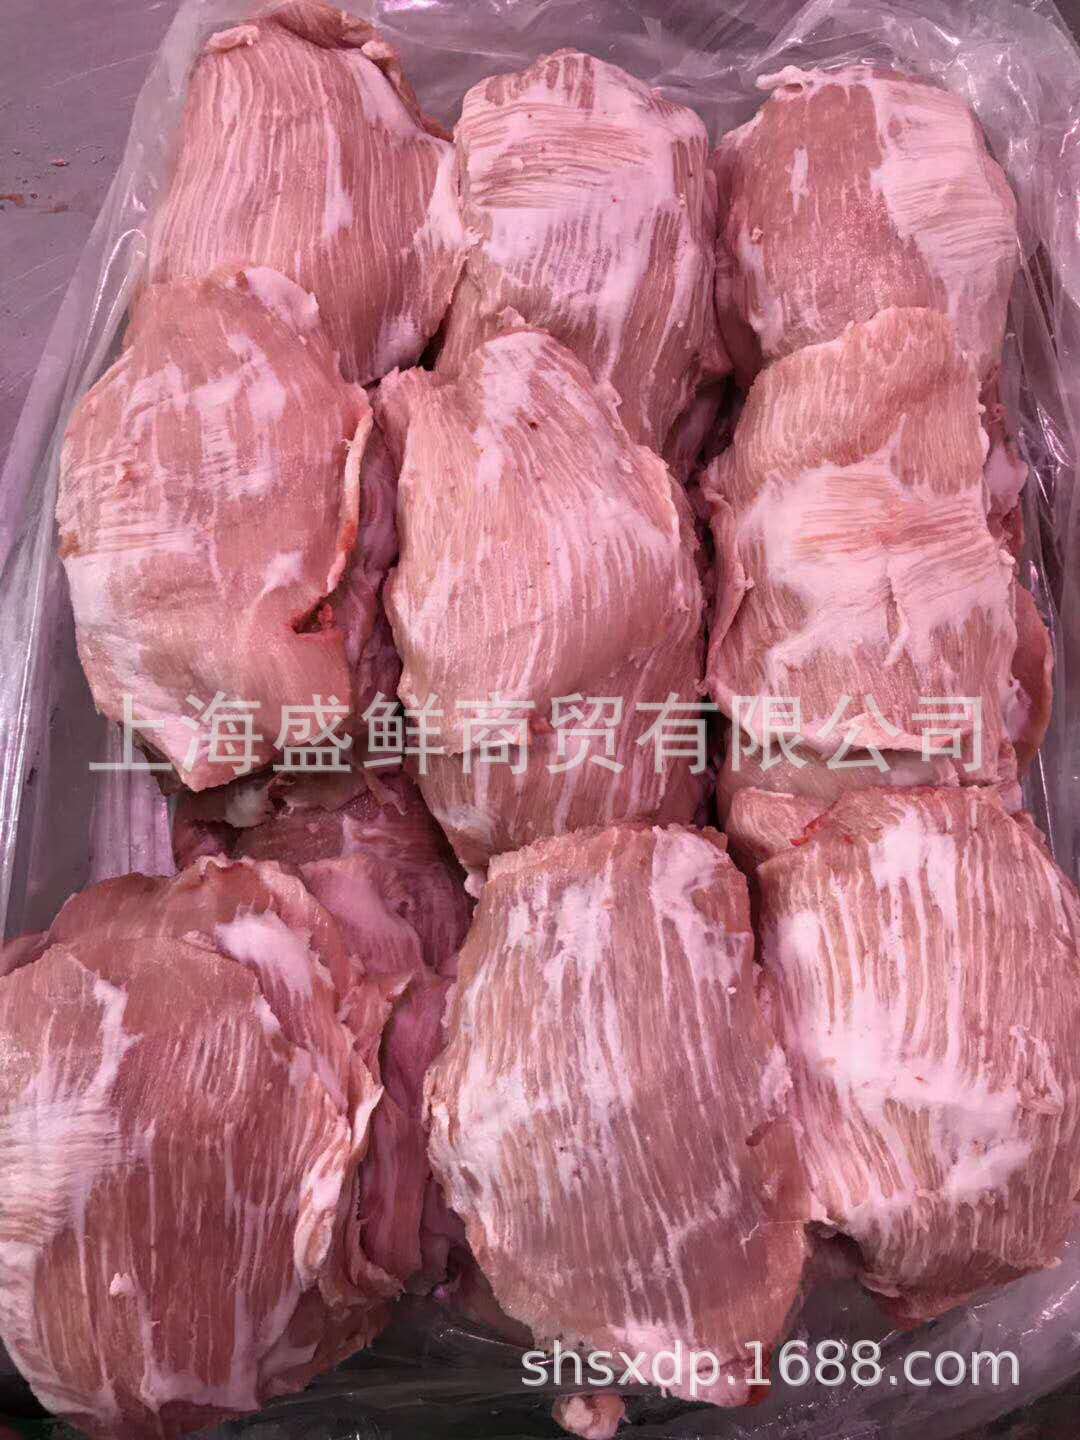 青峪黑猪·黑猪猪肉——第六届四川农业博览会最受欢迎农产品评选